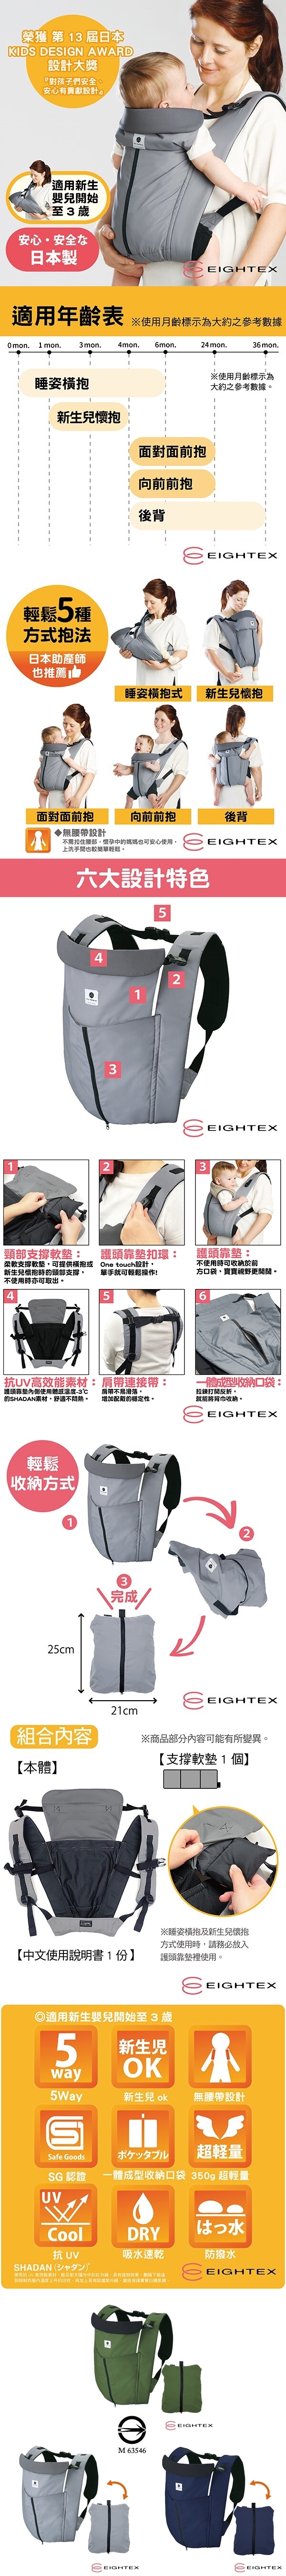 日本製Eightex-桑克瑪為好Cube五合一多功能背巾(深藍/軍綠/灰色)01-125